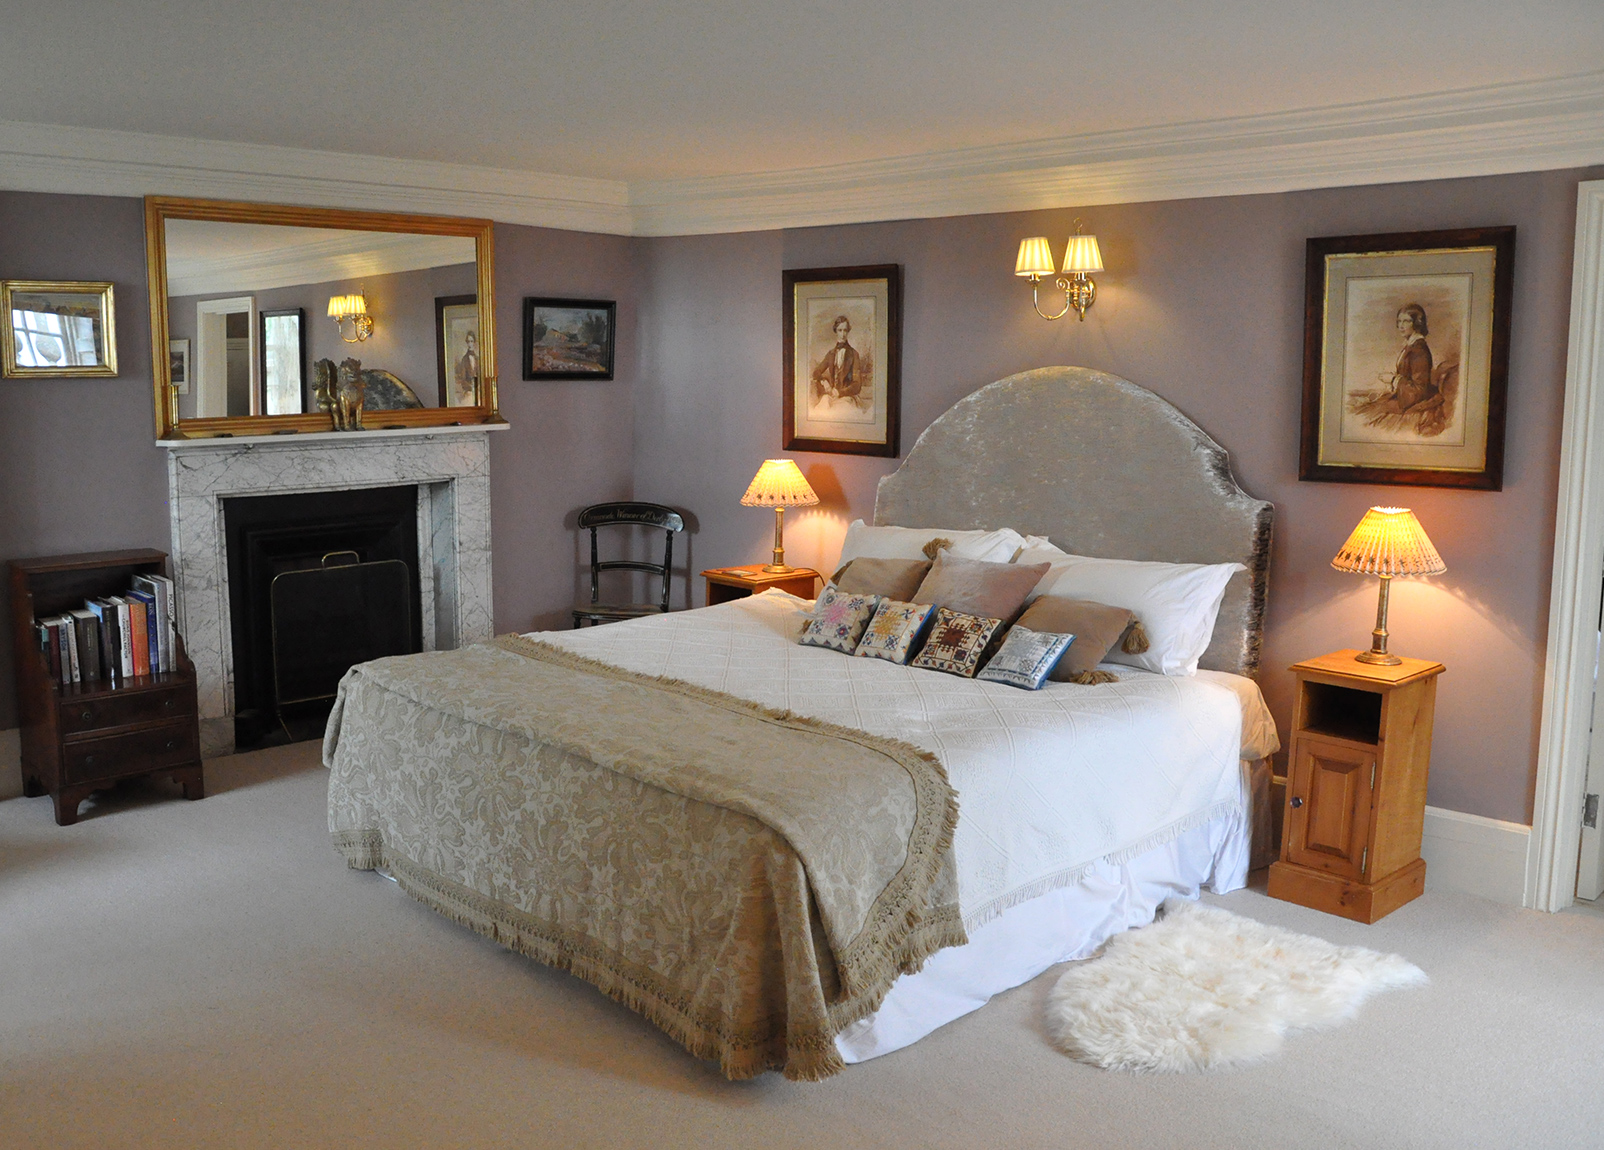 The Worcester Bedroom at Kirtlington Park